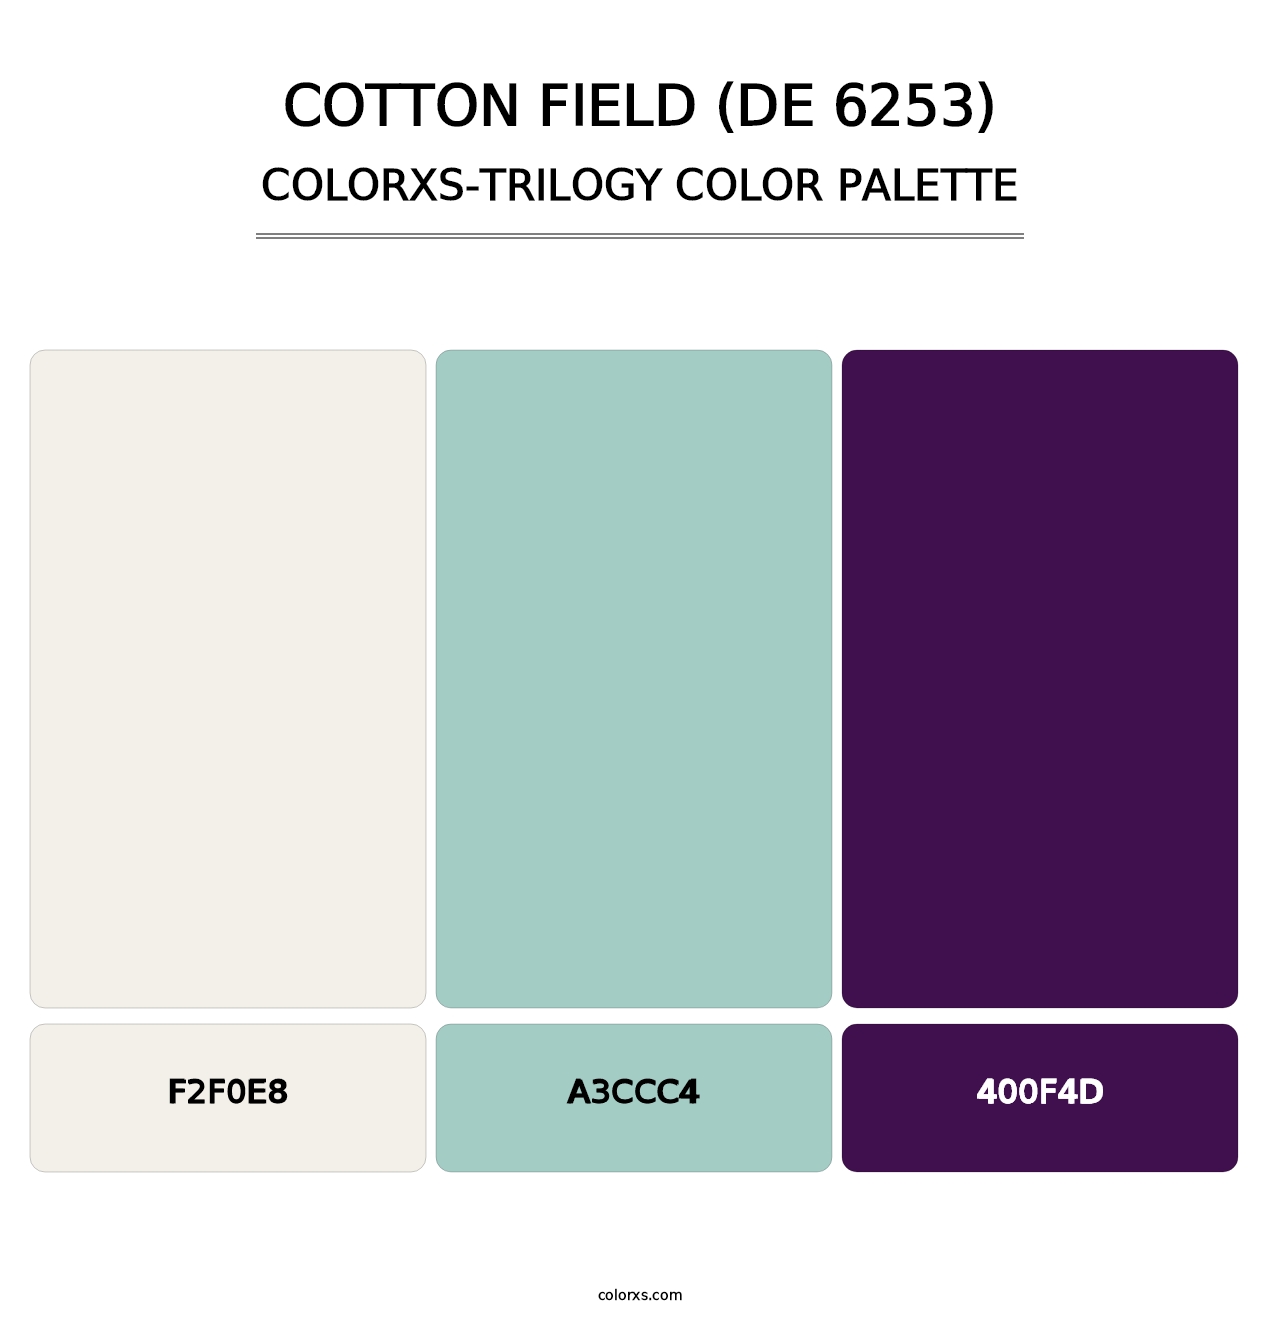 Cotton Field (DE 6253) - Colorxs Trilogy Palette